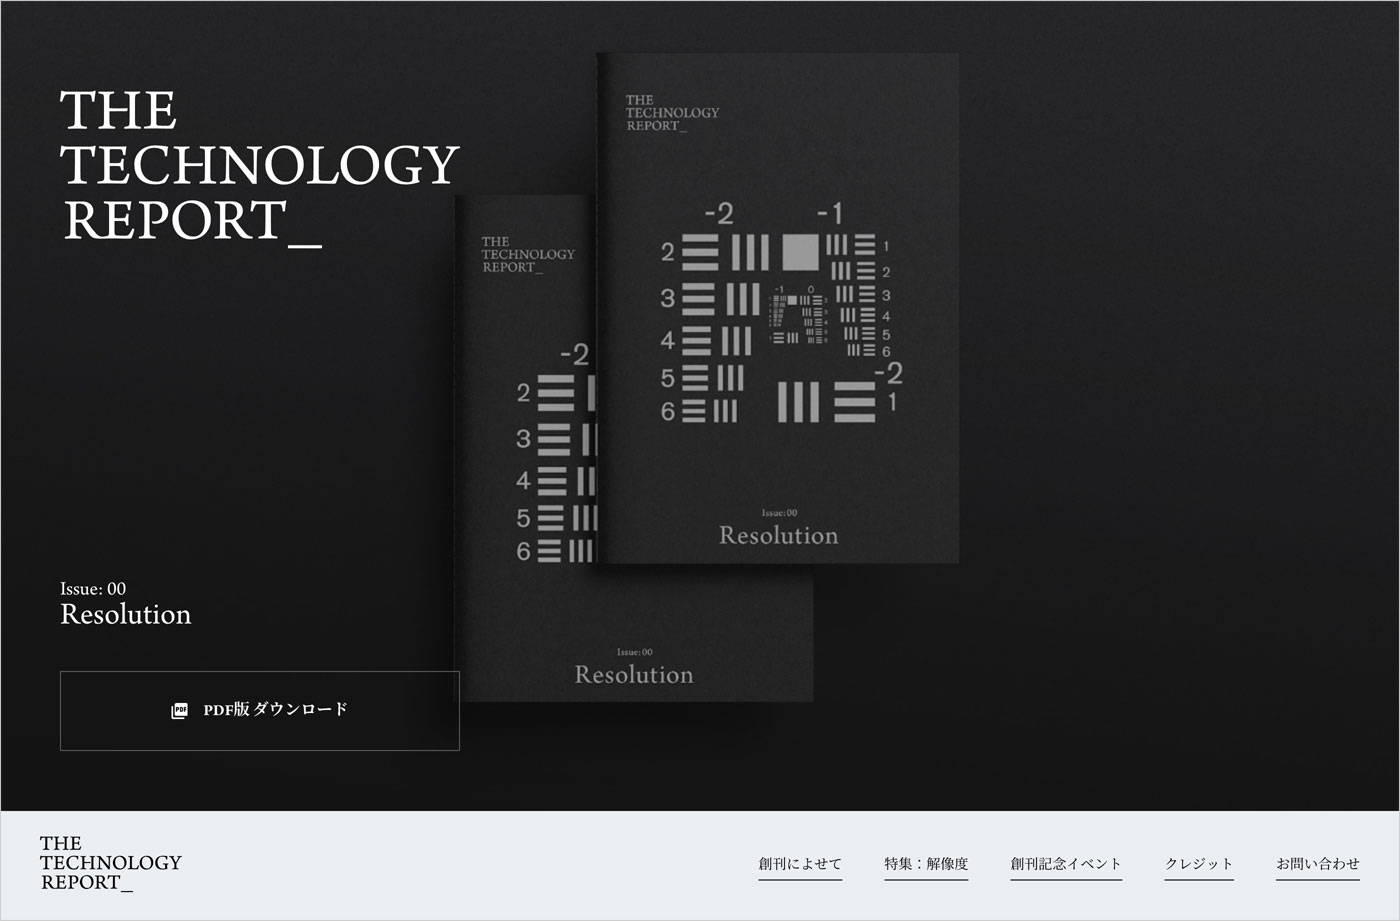 THE TECHNOLOGY REPORTウェブサイトの画面キャプチャ画像